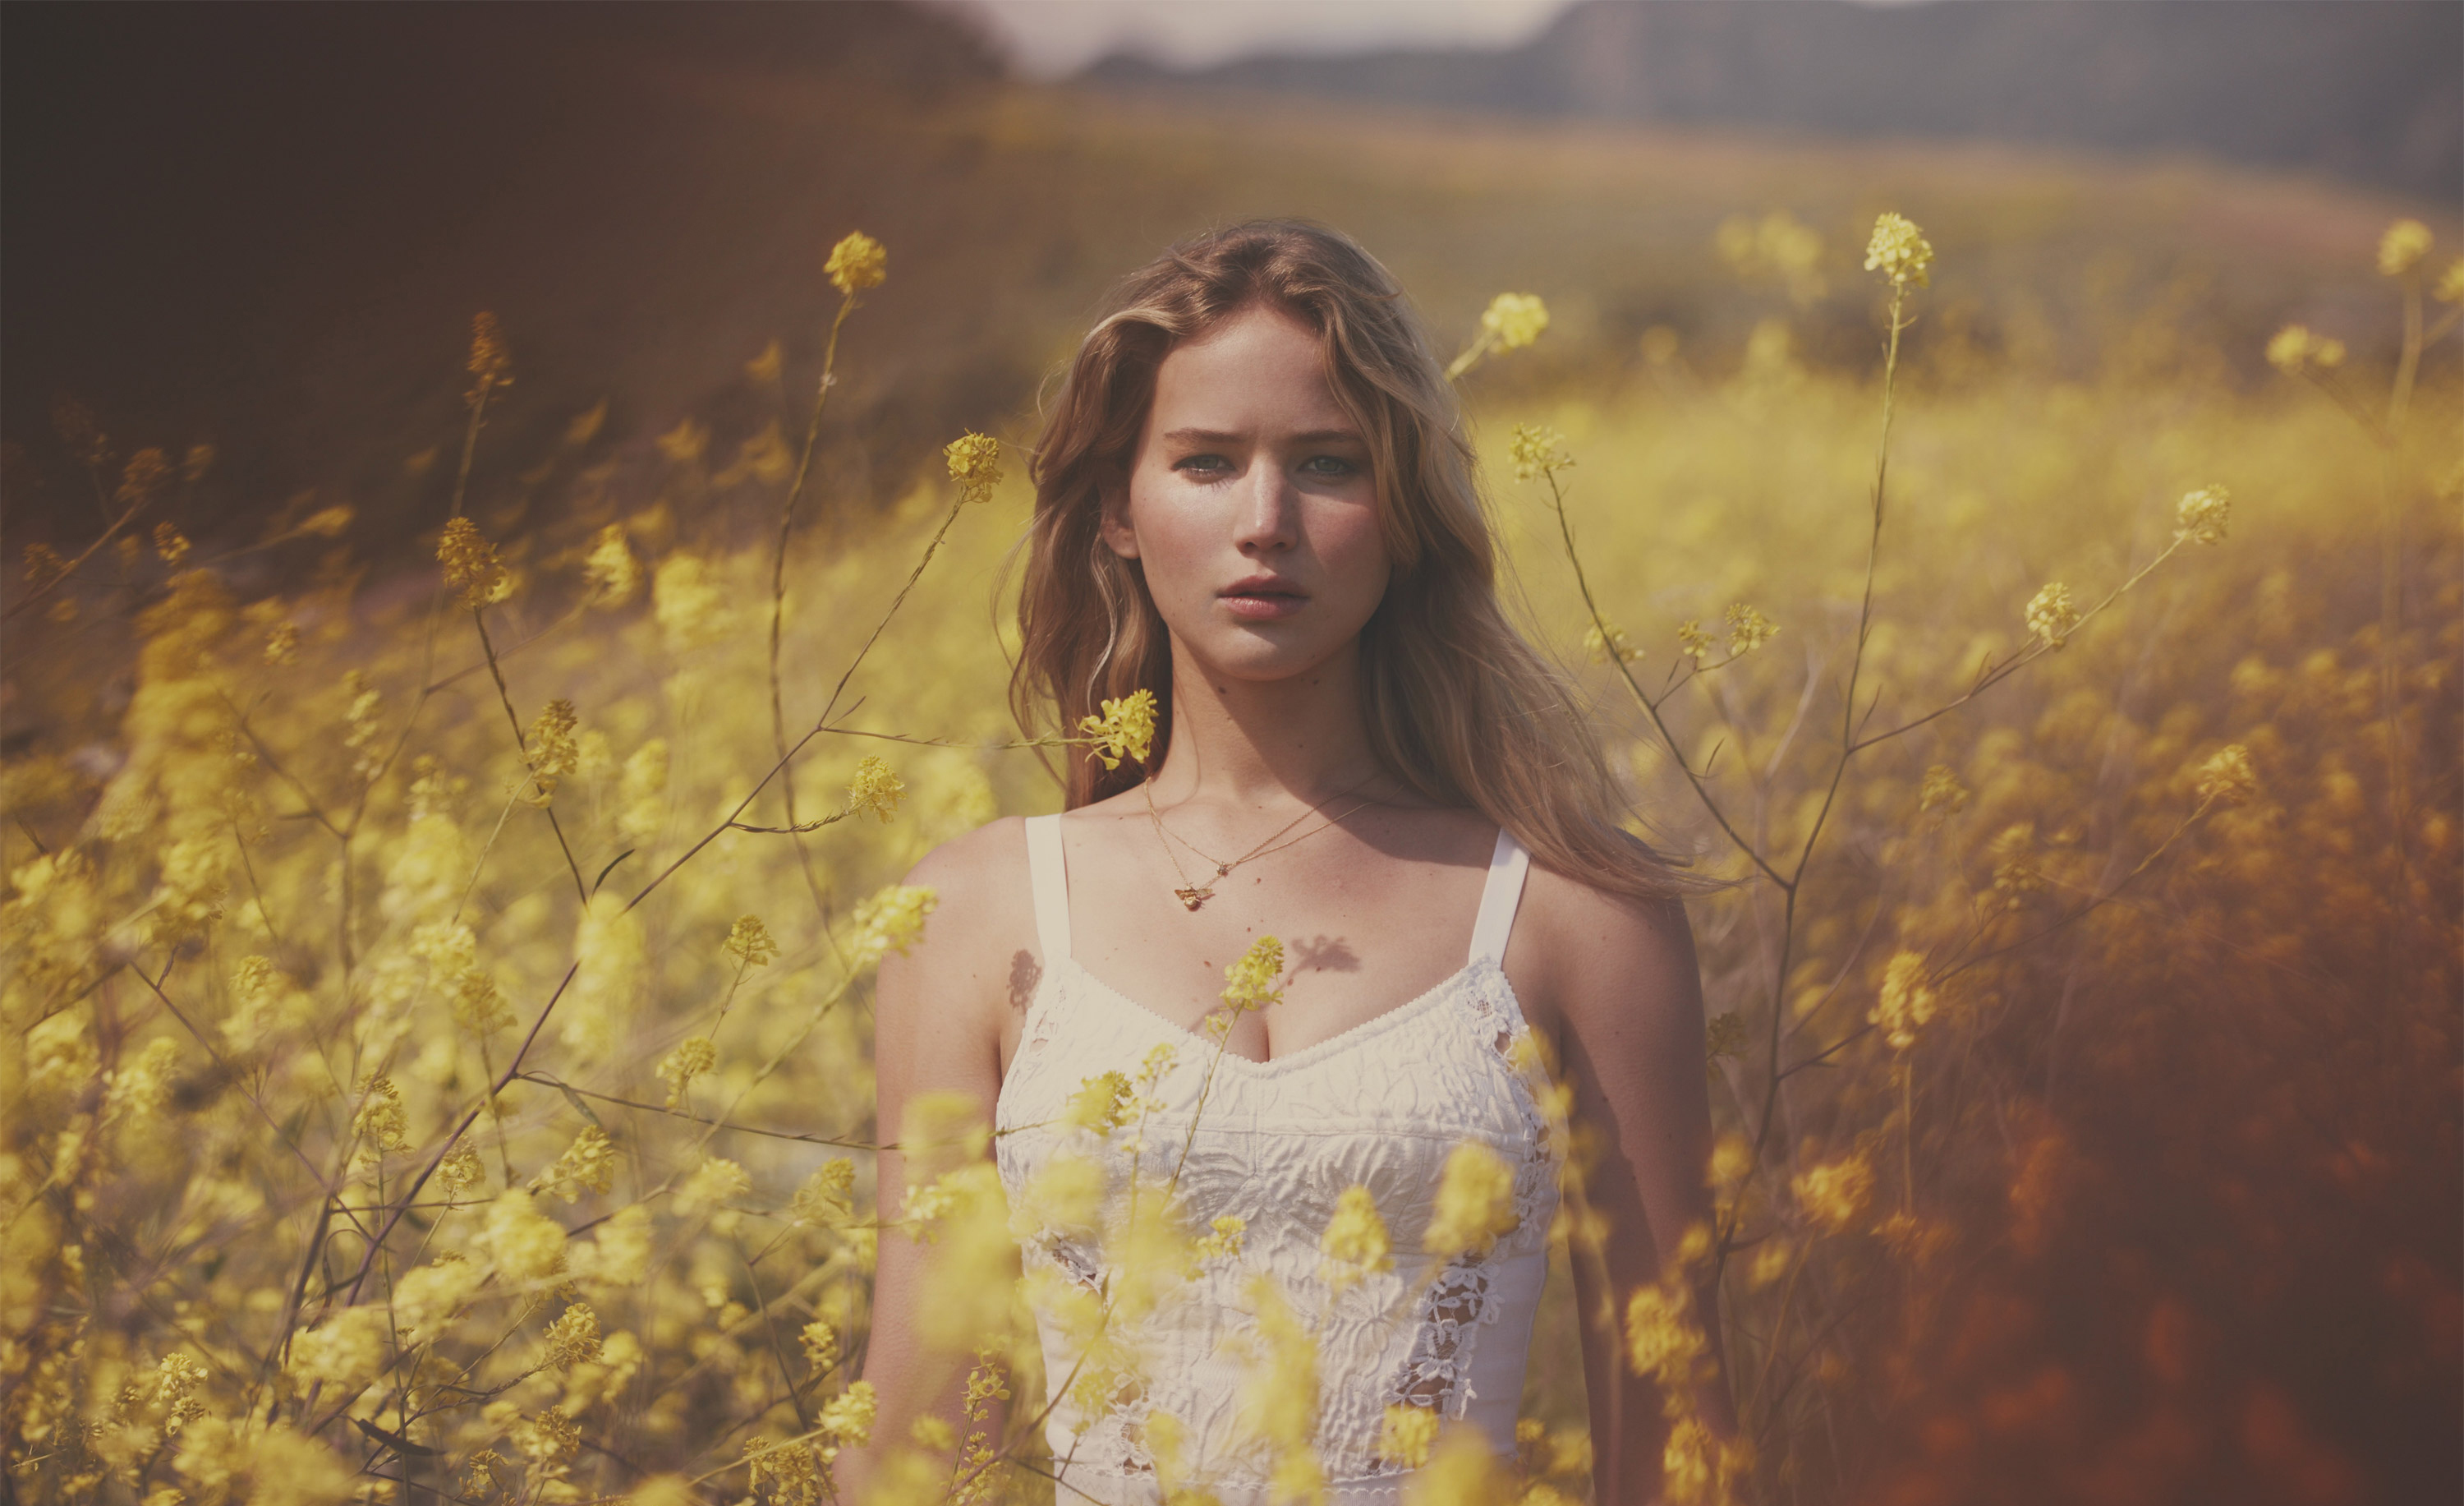 Women Jennifer Lawrence Blonde Actress Field Depth Of Field White Dress Flowers Yellow Flowers Plant 3000x1833